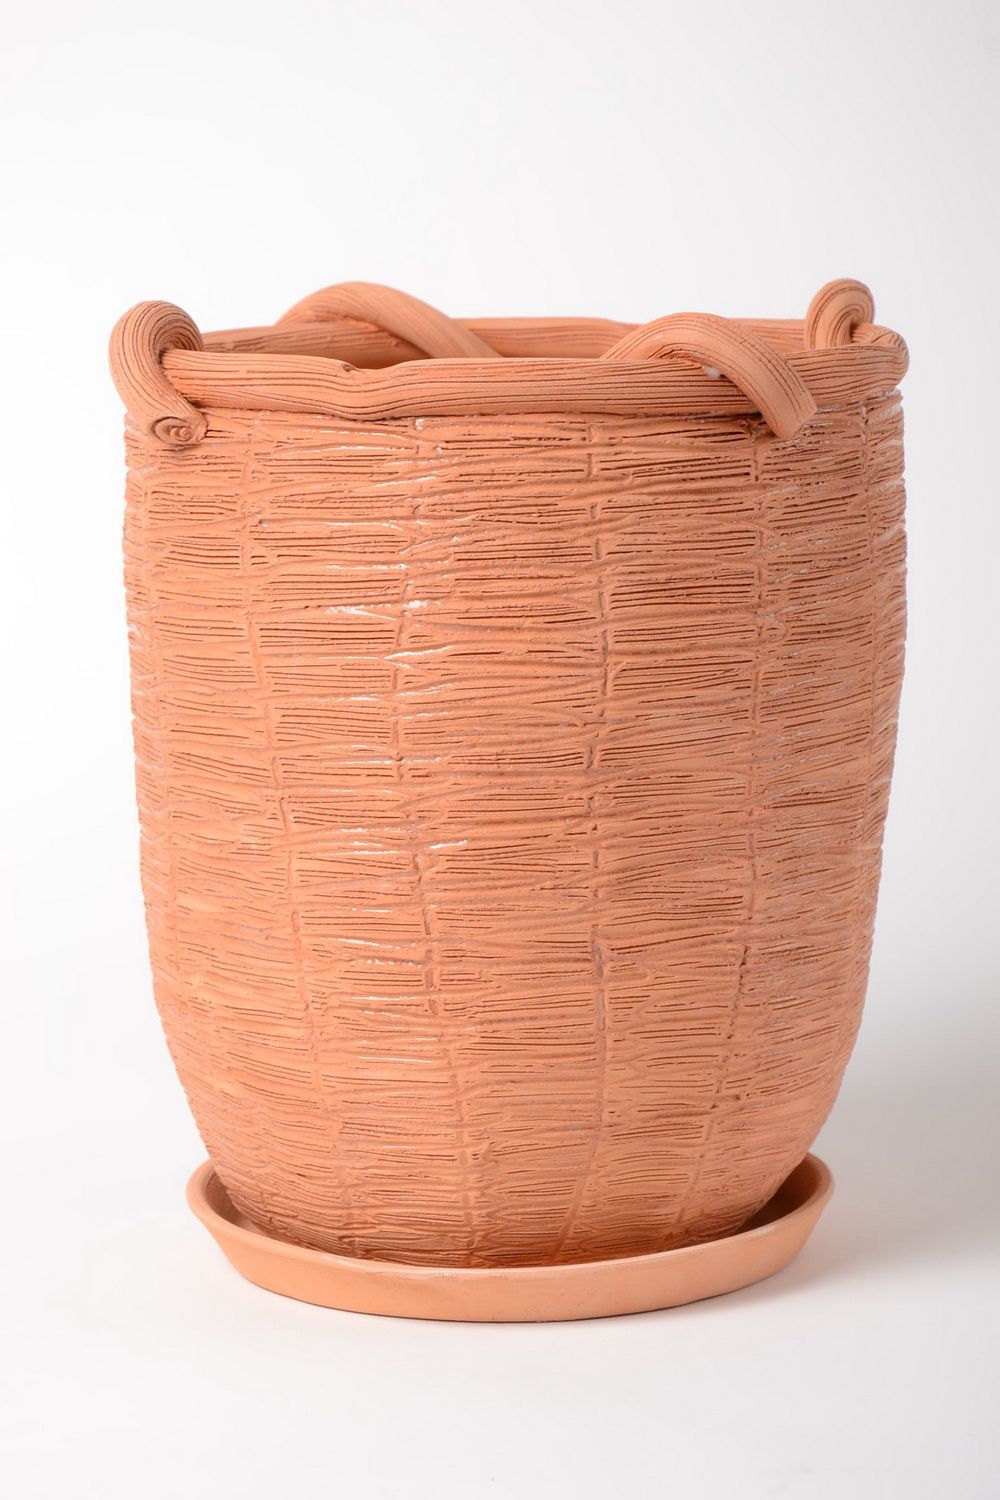 Handmade plant pot ceramic planter gift ideas for housewarming home decor photo 2